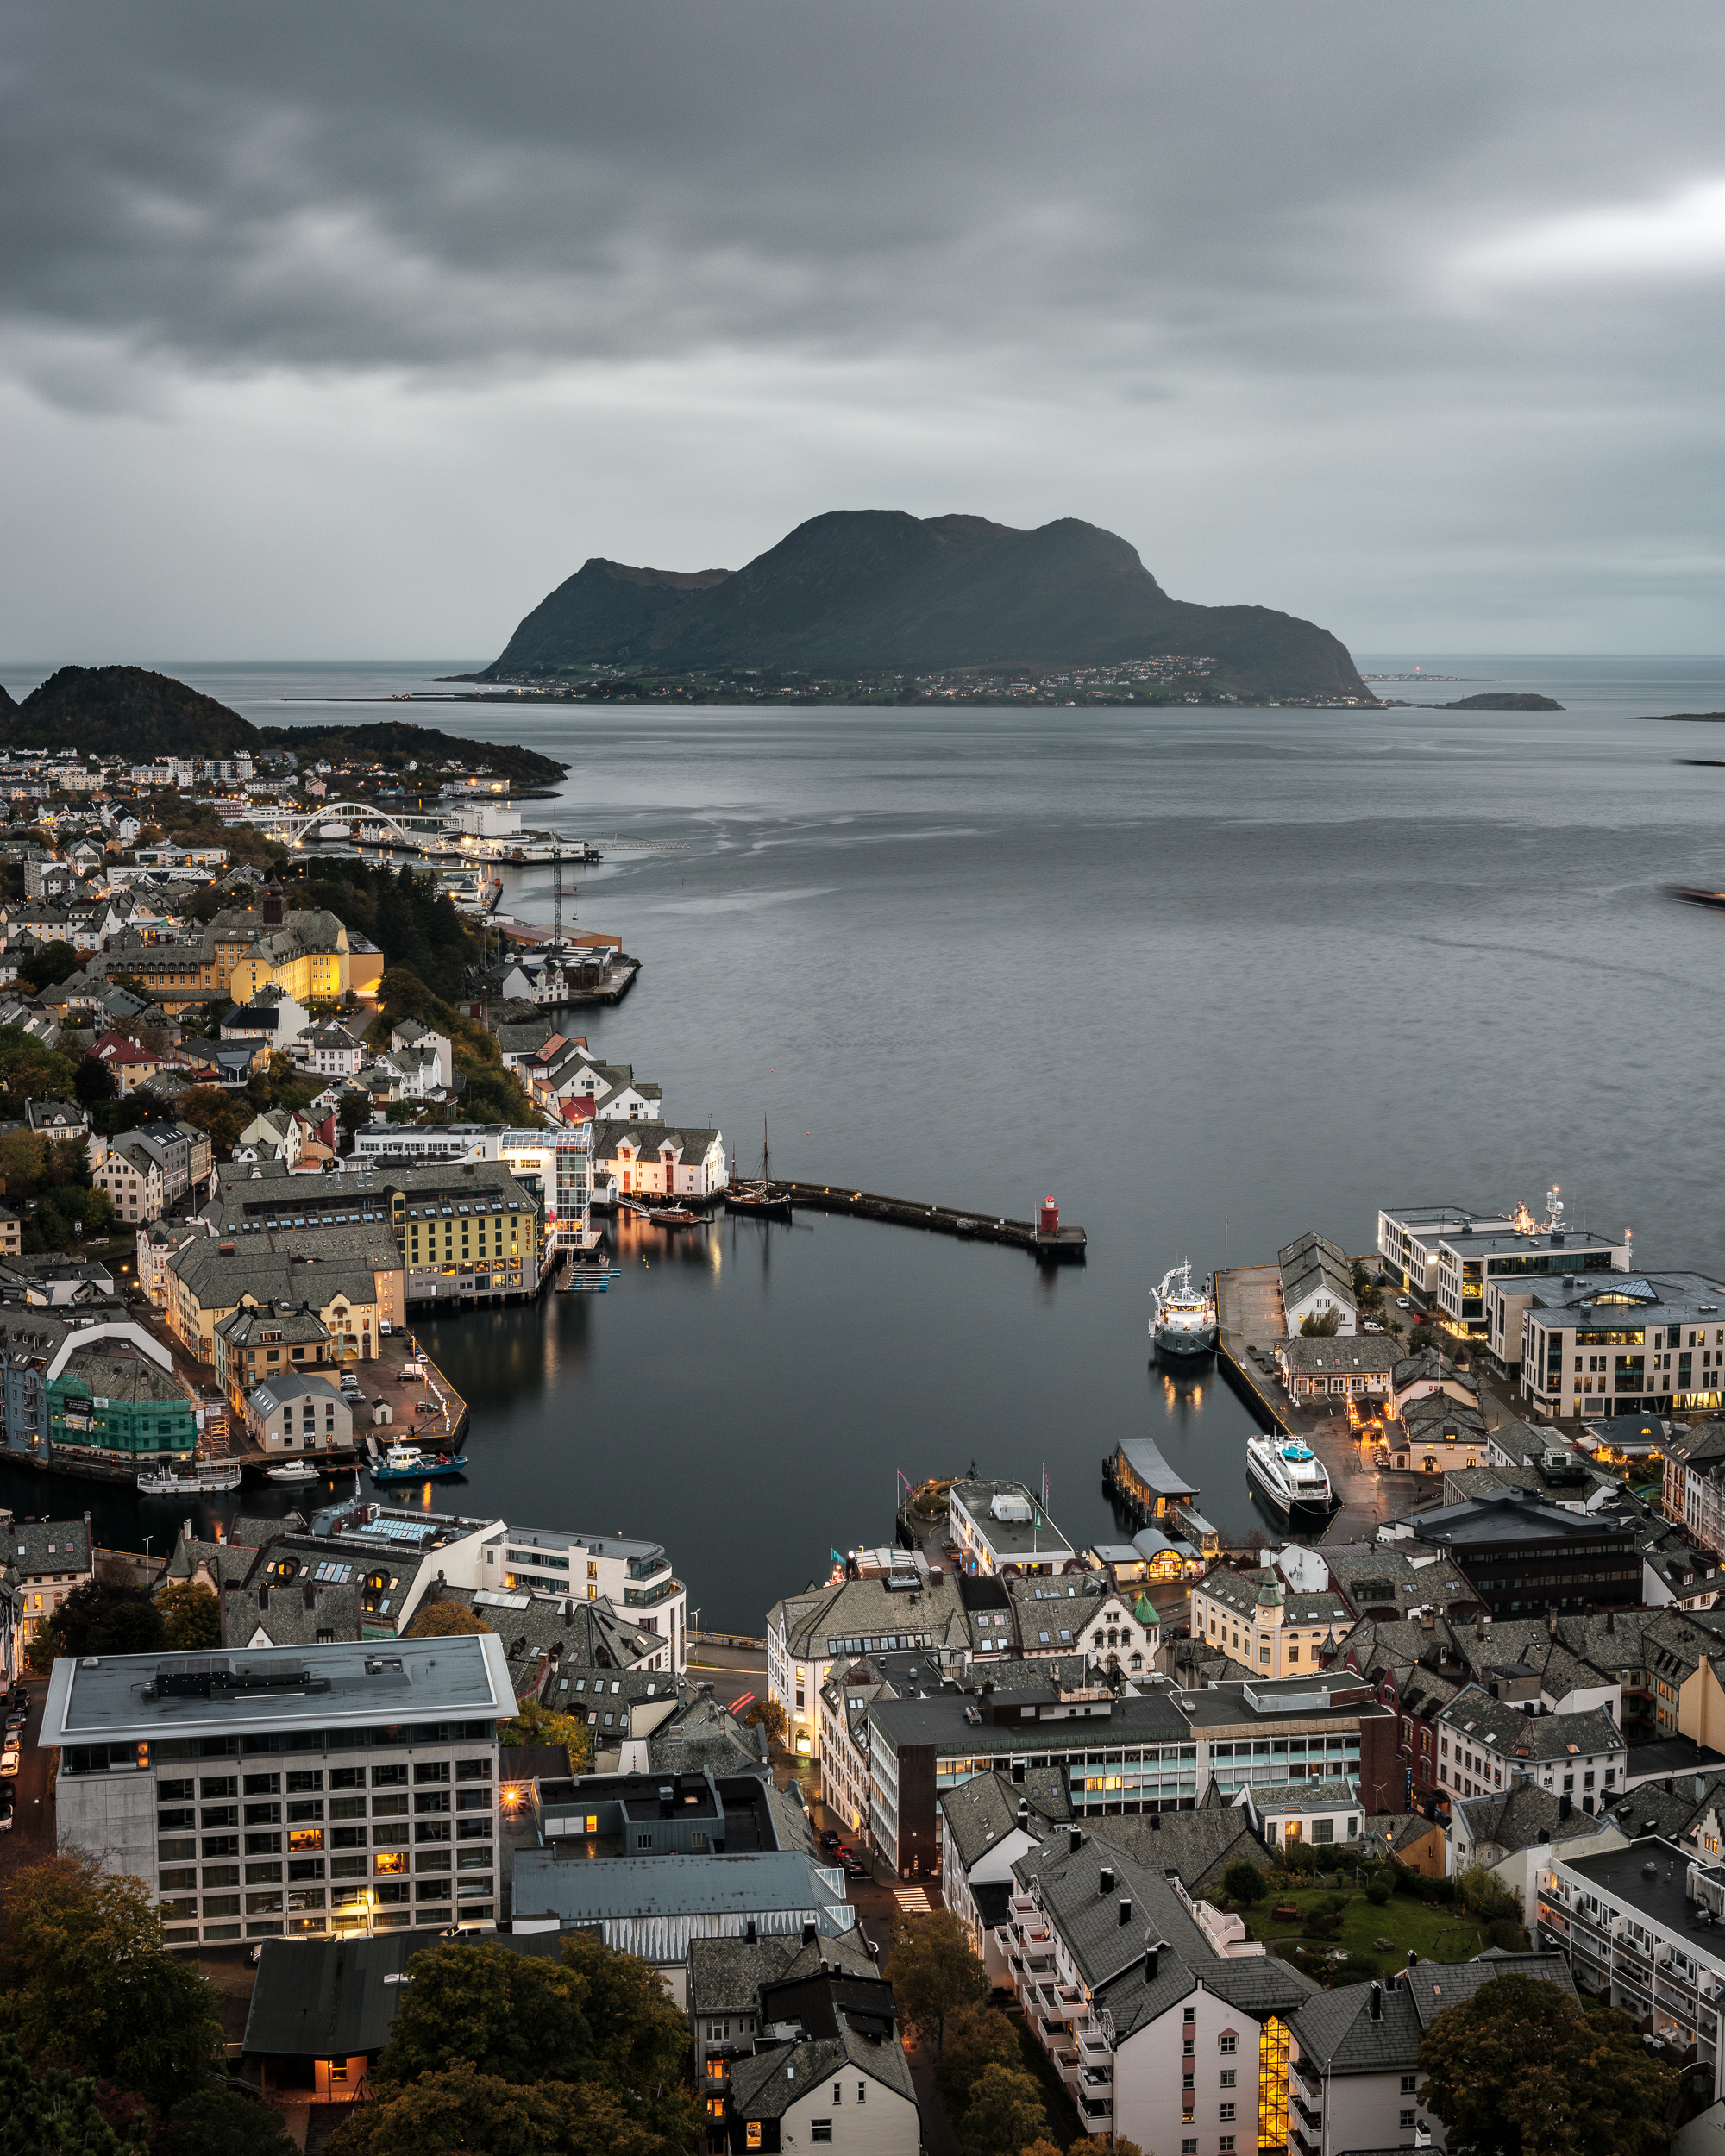 Townscape in Norway taken on GFX 50s II